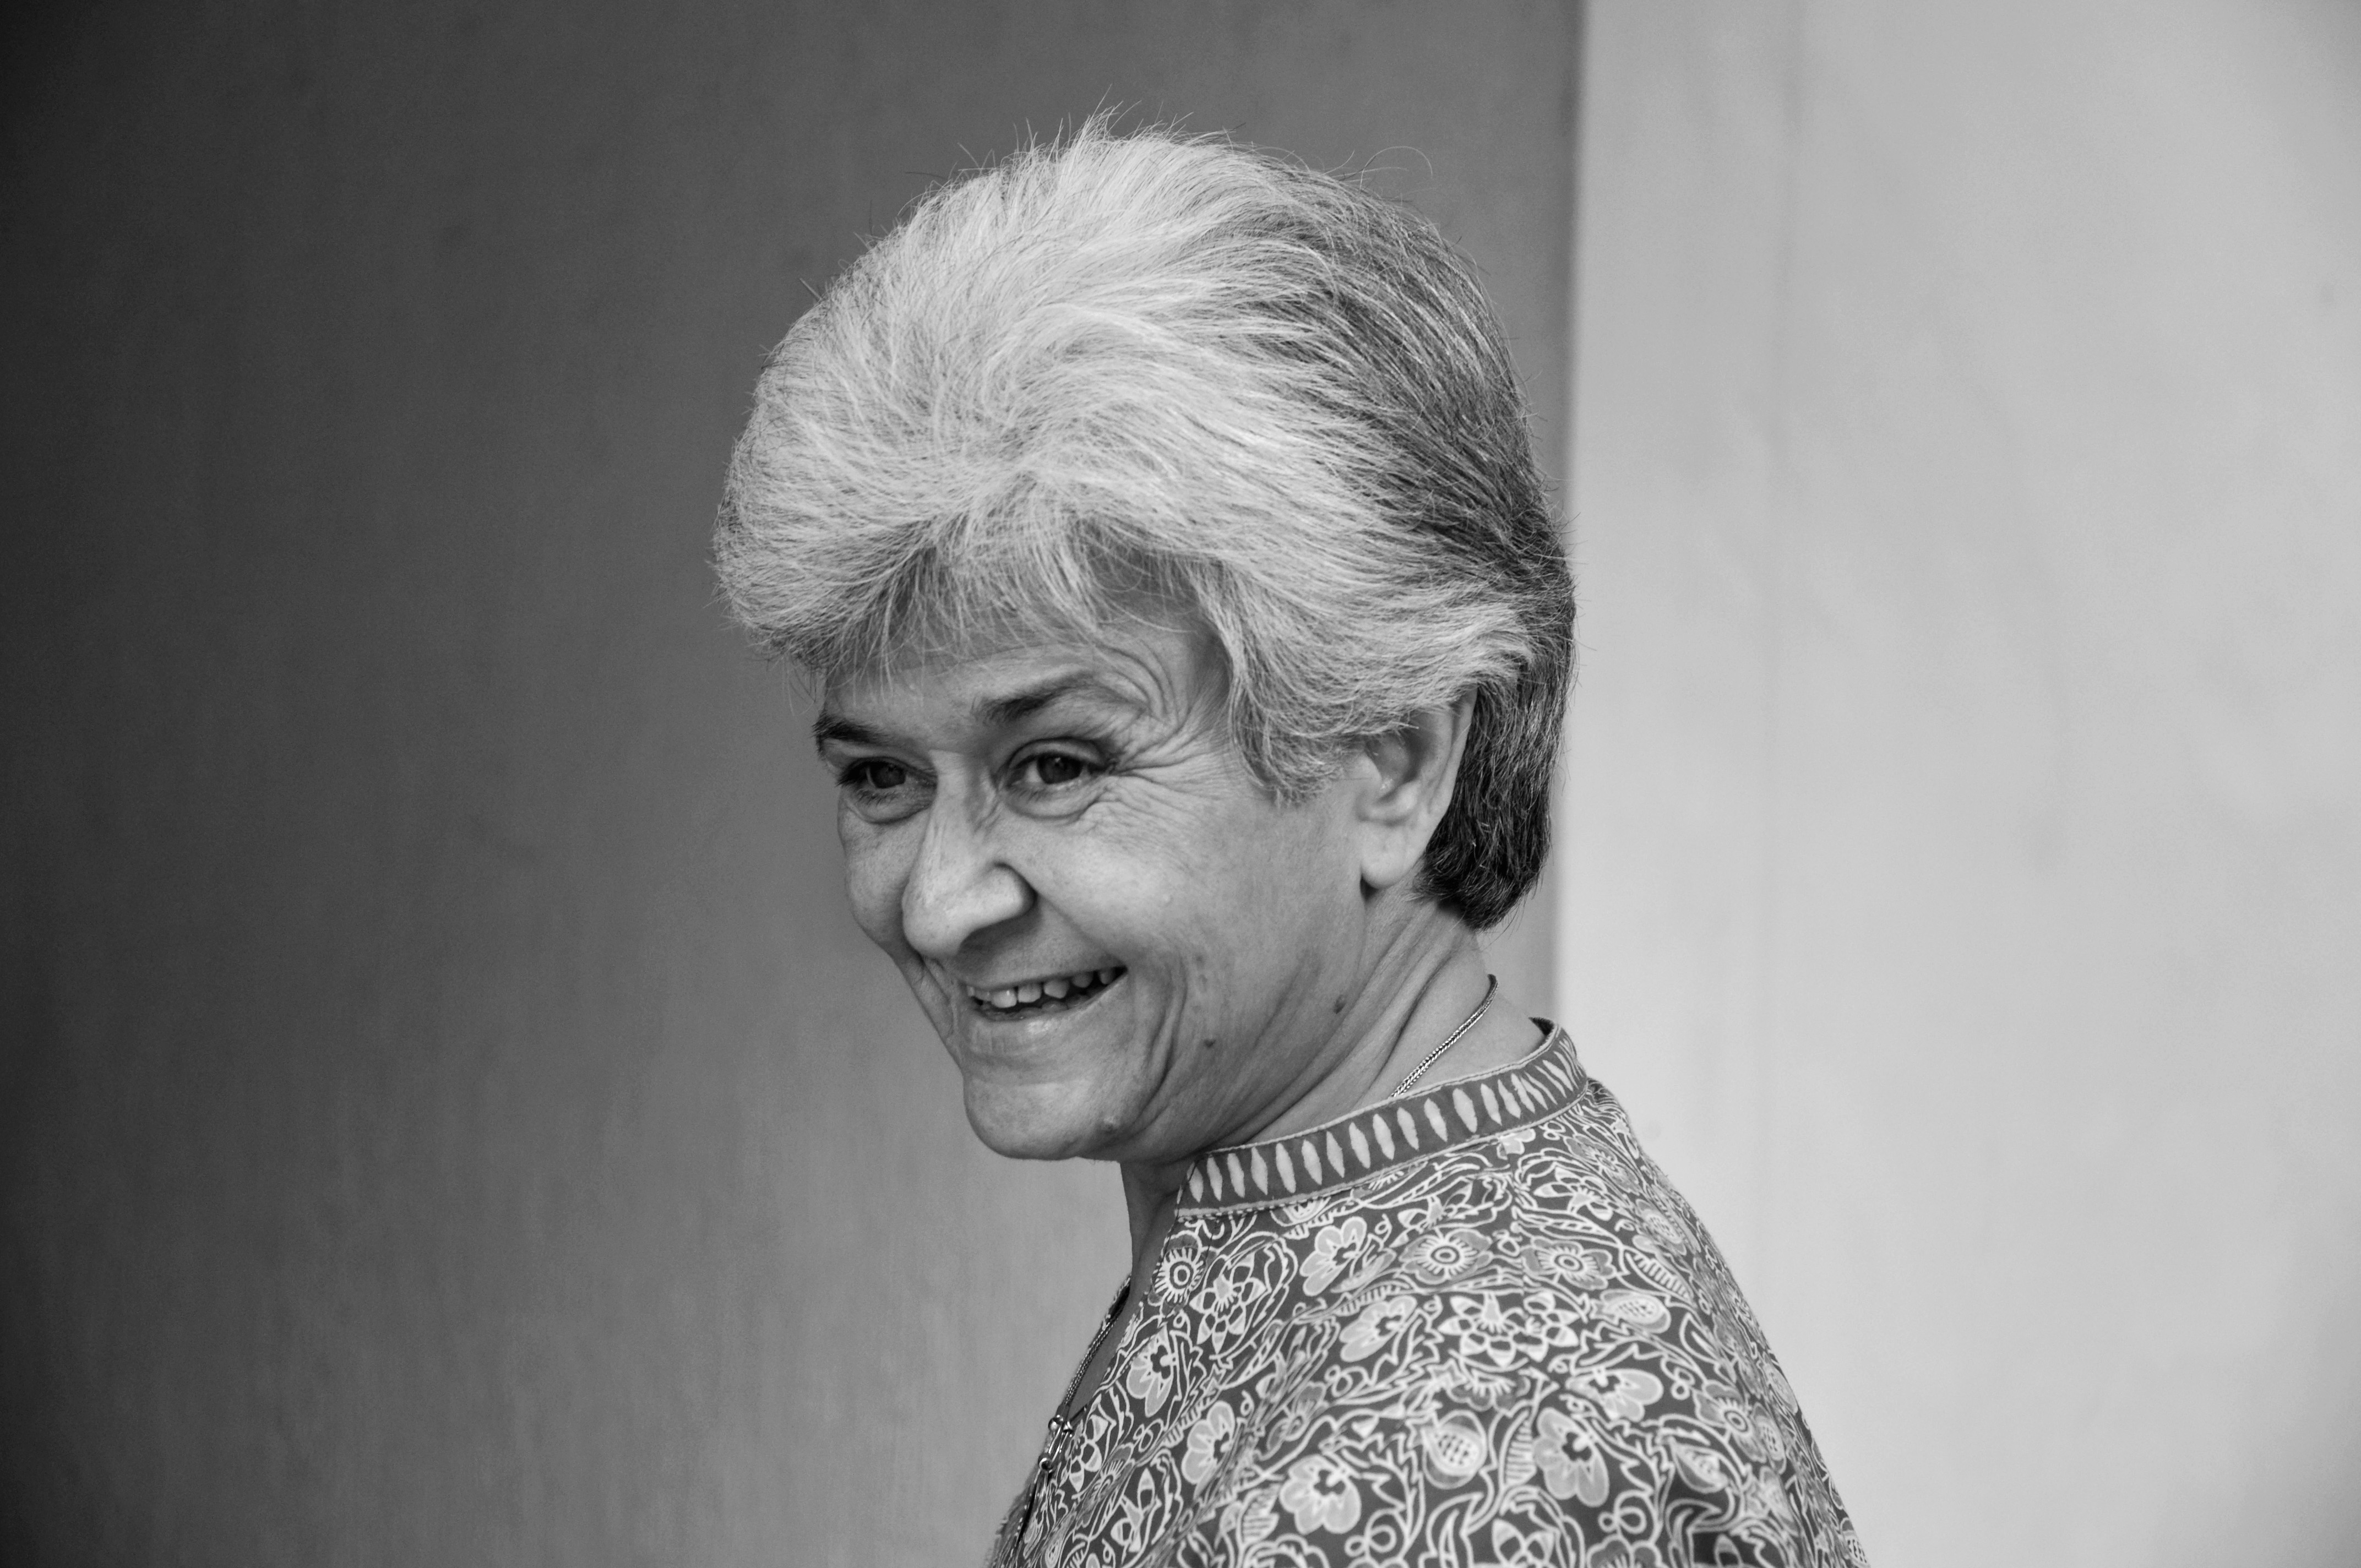 Kamla Bhasin